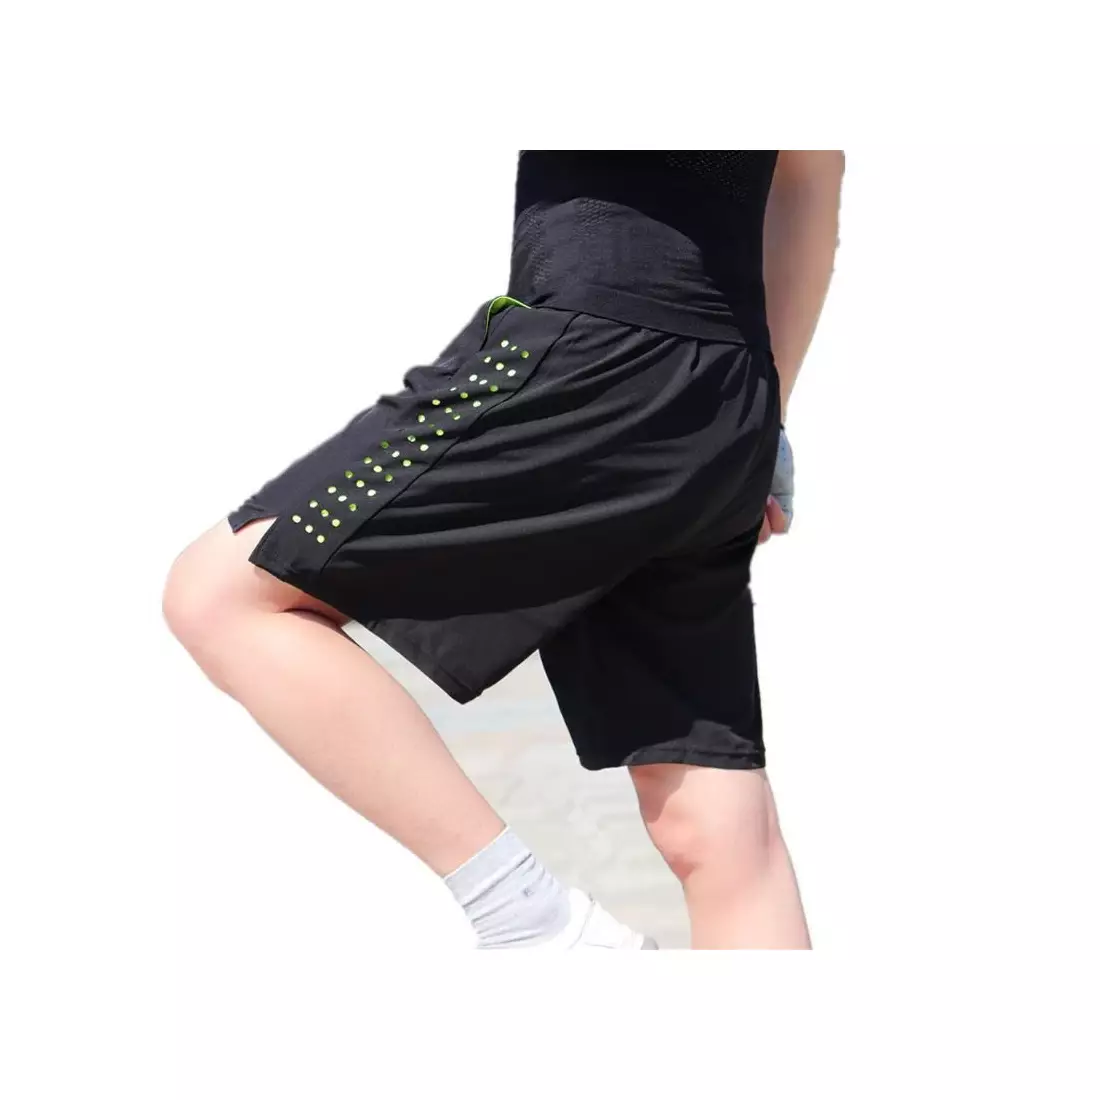 WOSAWE BL123-B pantaloni scurți de alergare pentru bărbați 2in1, negru